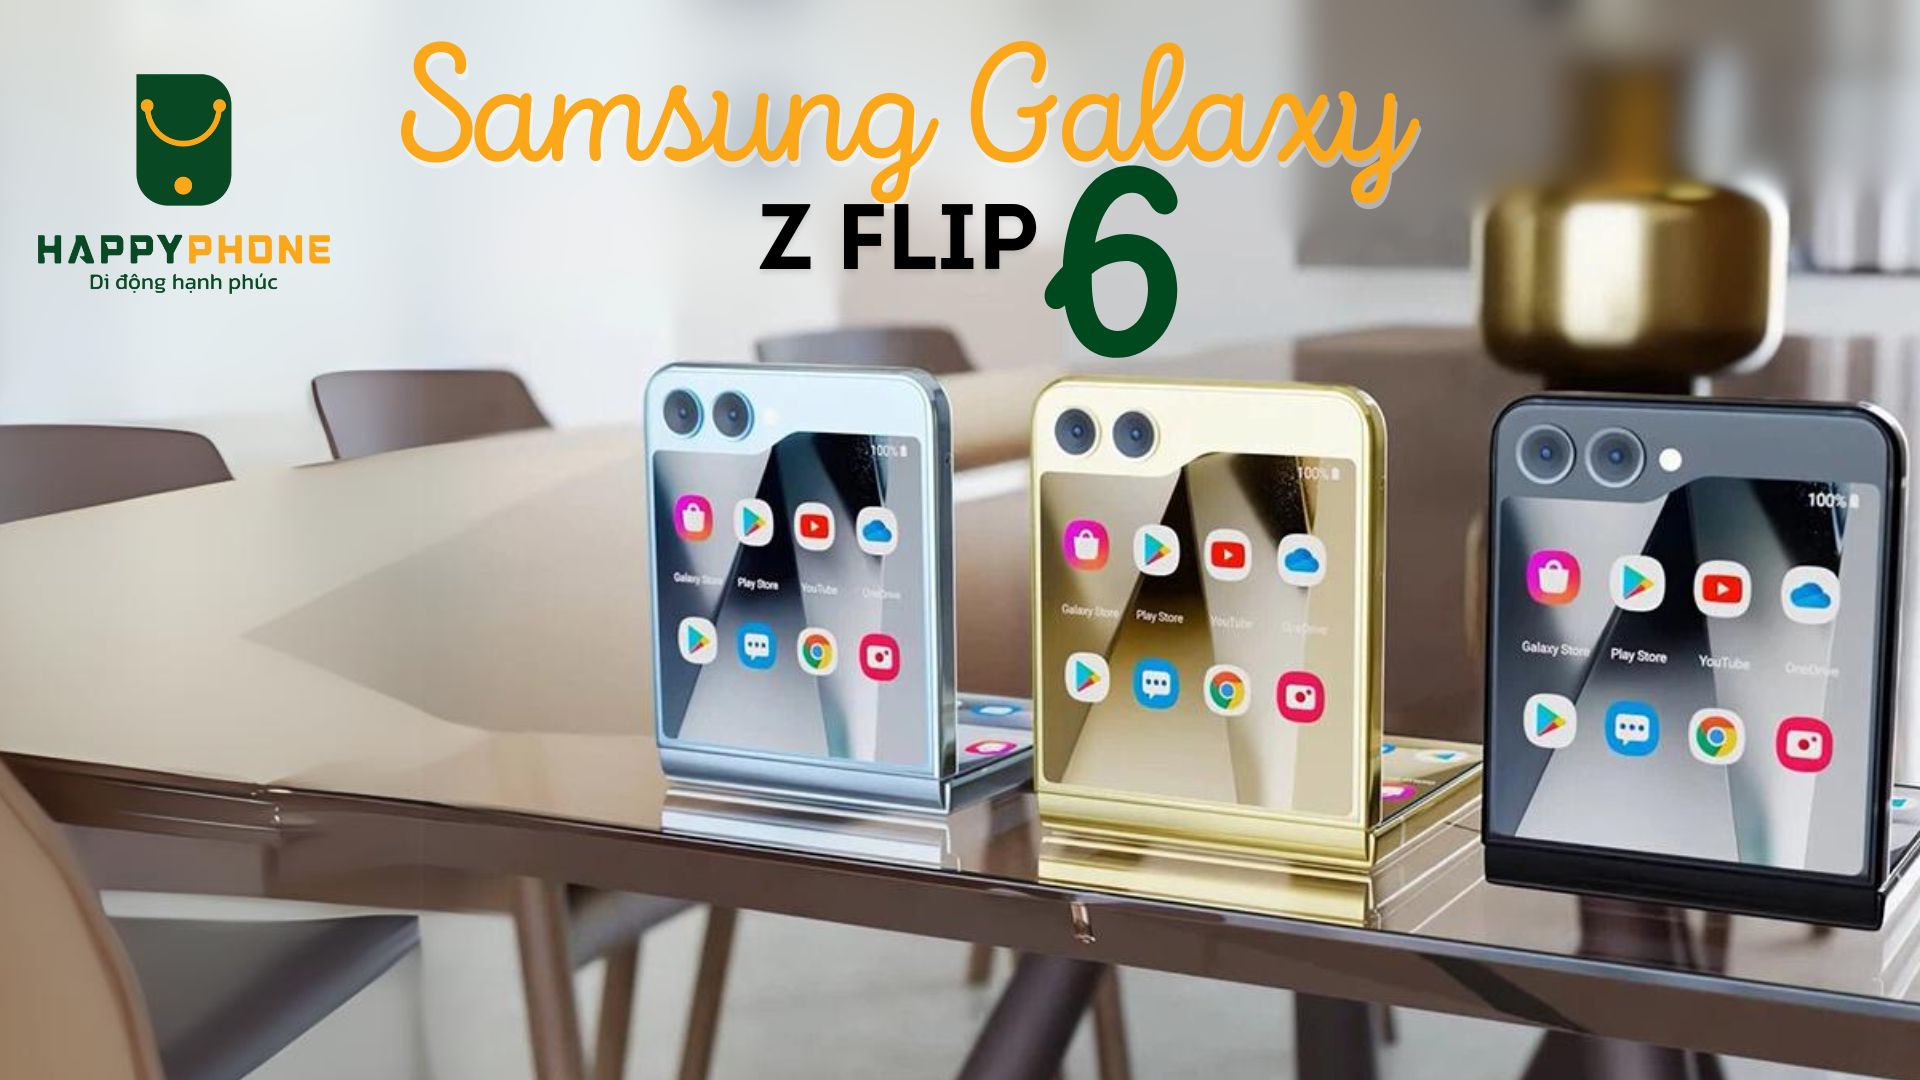 Samsung Galaxy Z Flip 6 có gì mới về thiết kế